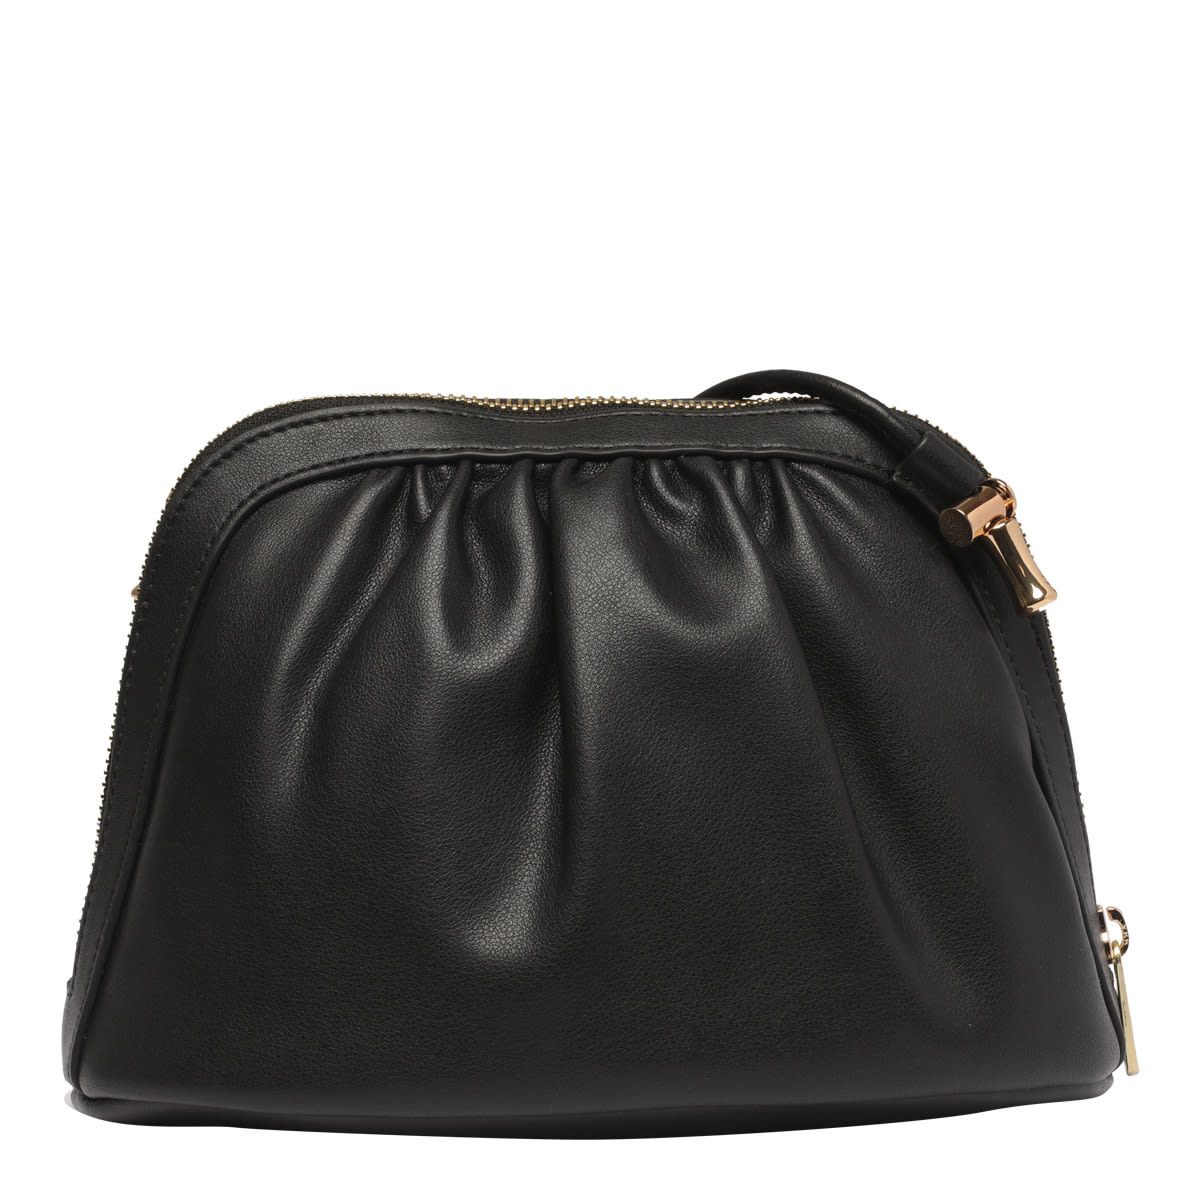 Shop Apc Bourse Ninon Crossbody Bag In Noir